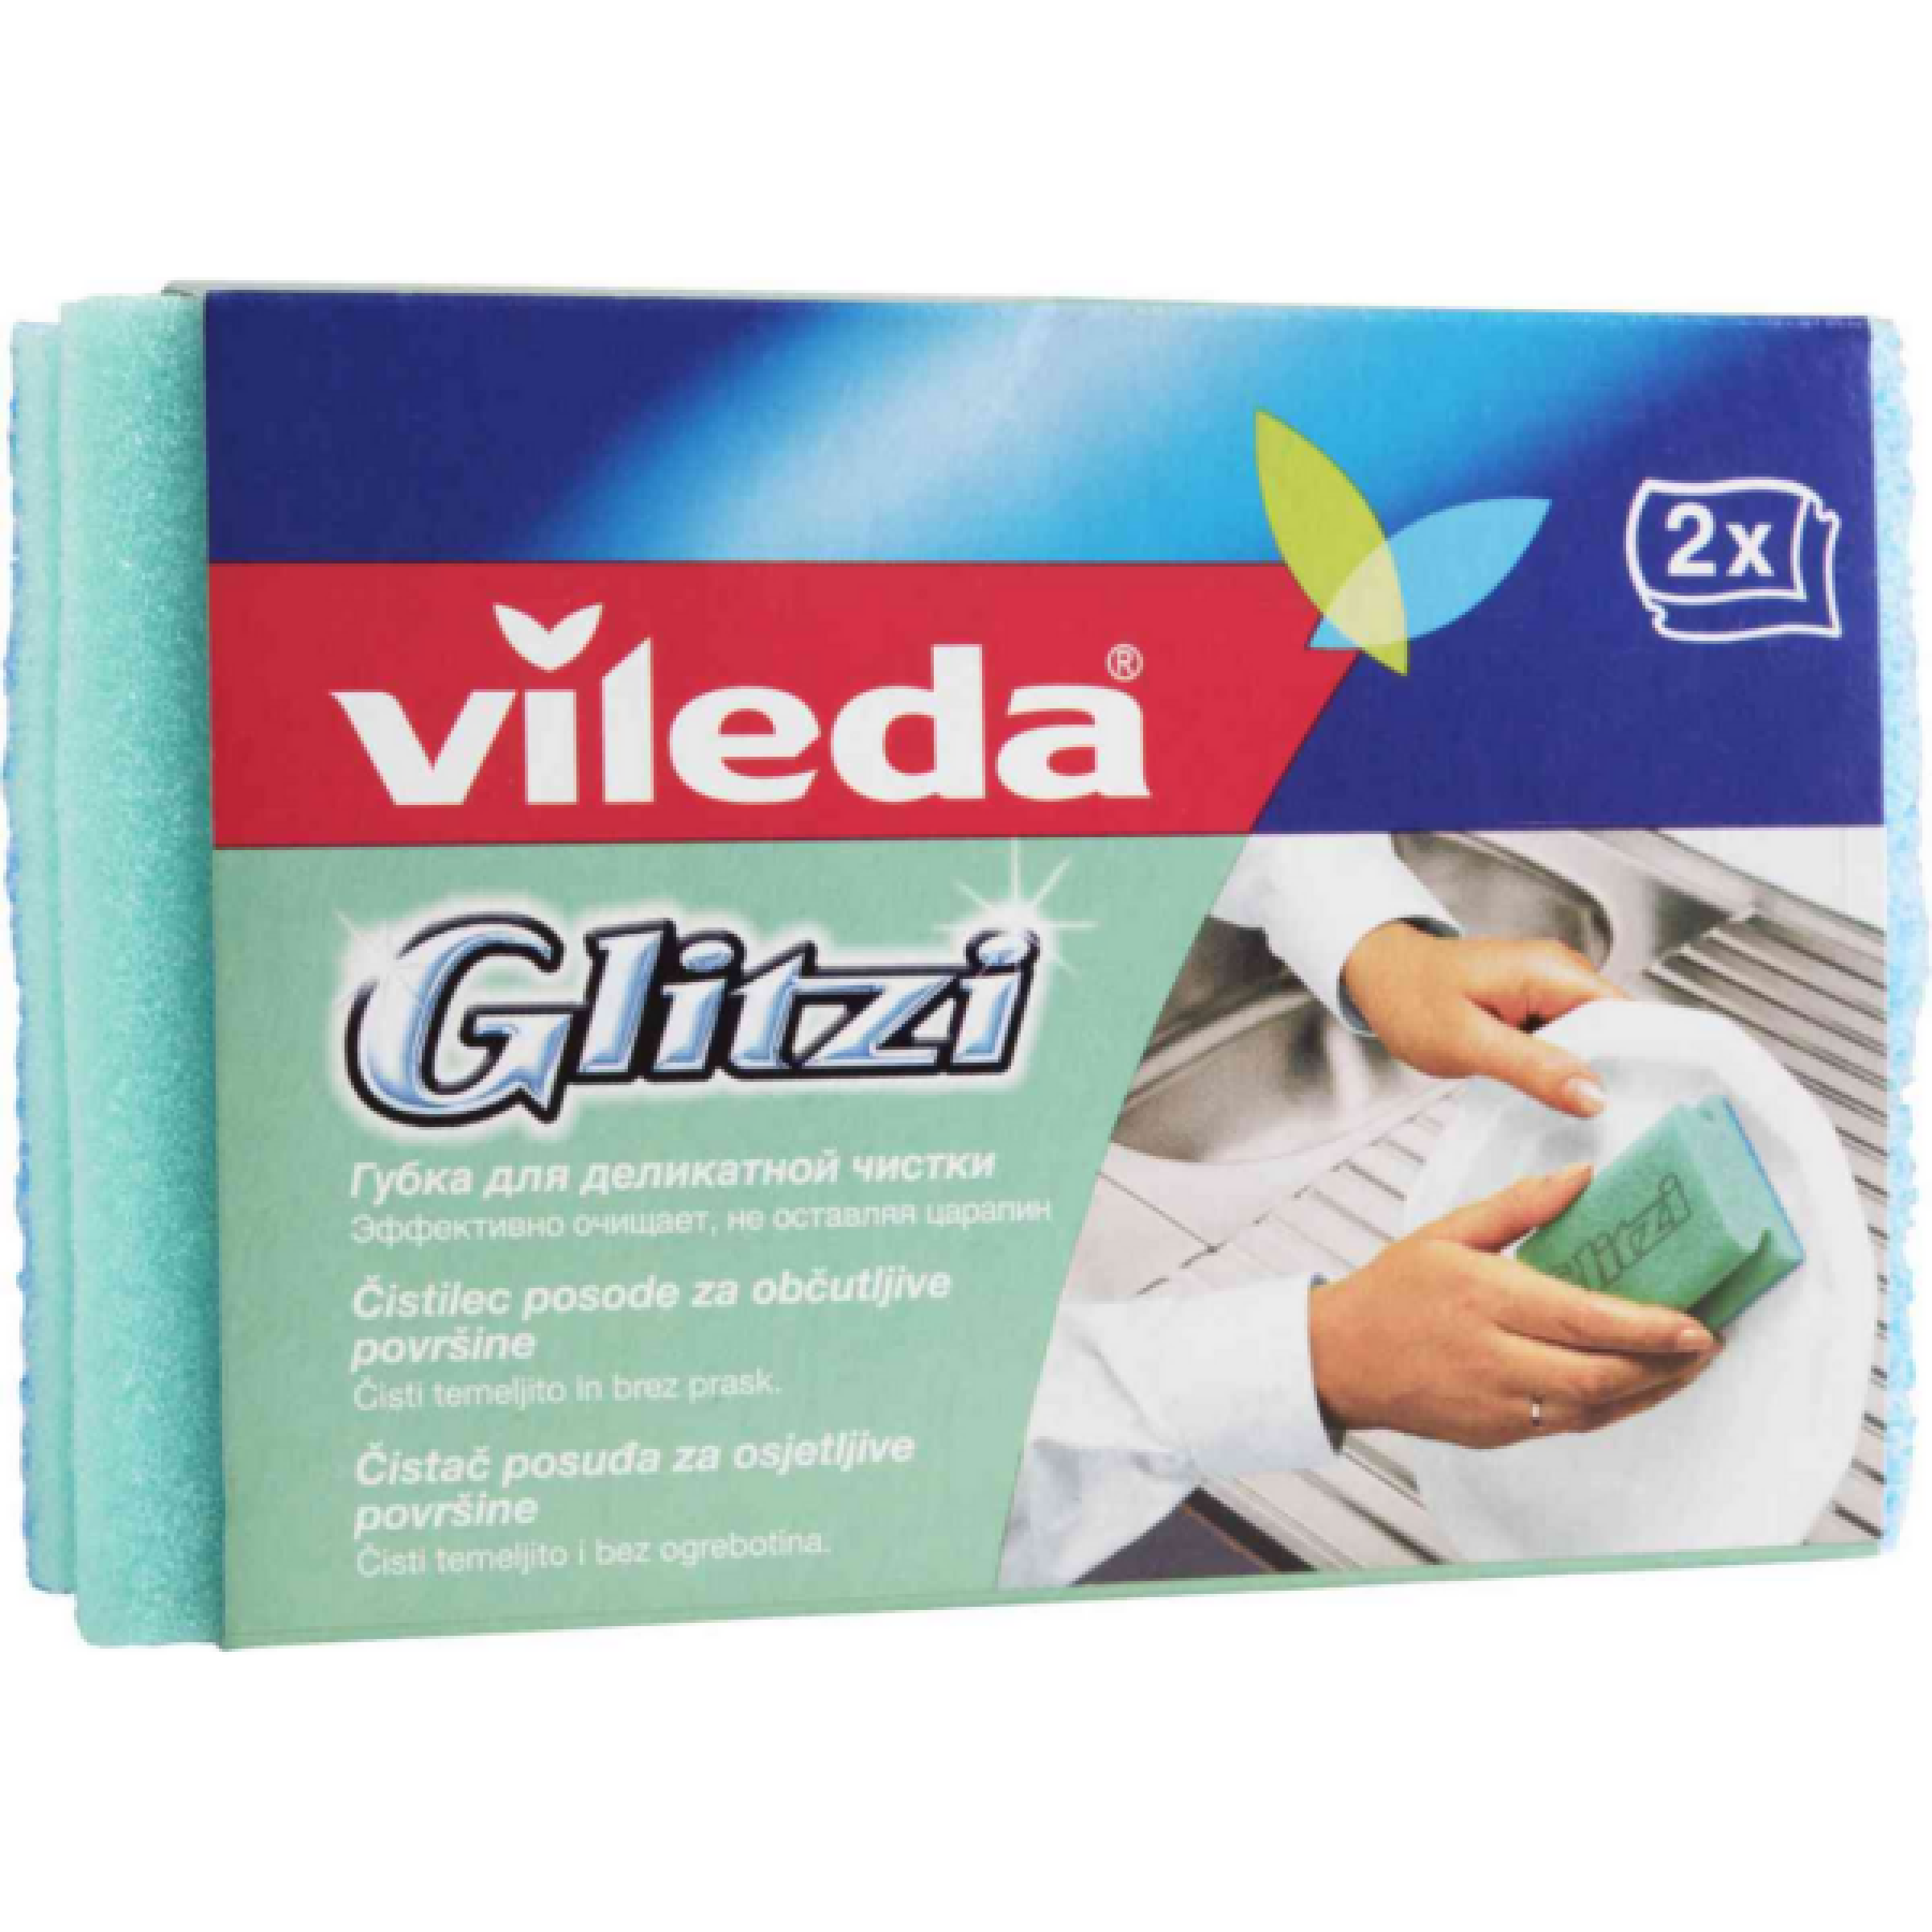 Набор губок для посуды Vileda Glitzi, 2шт